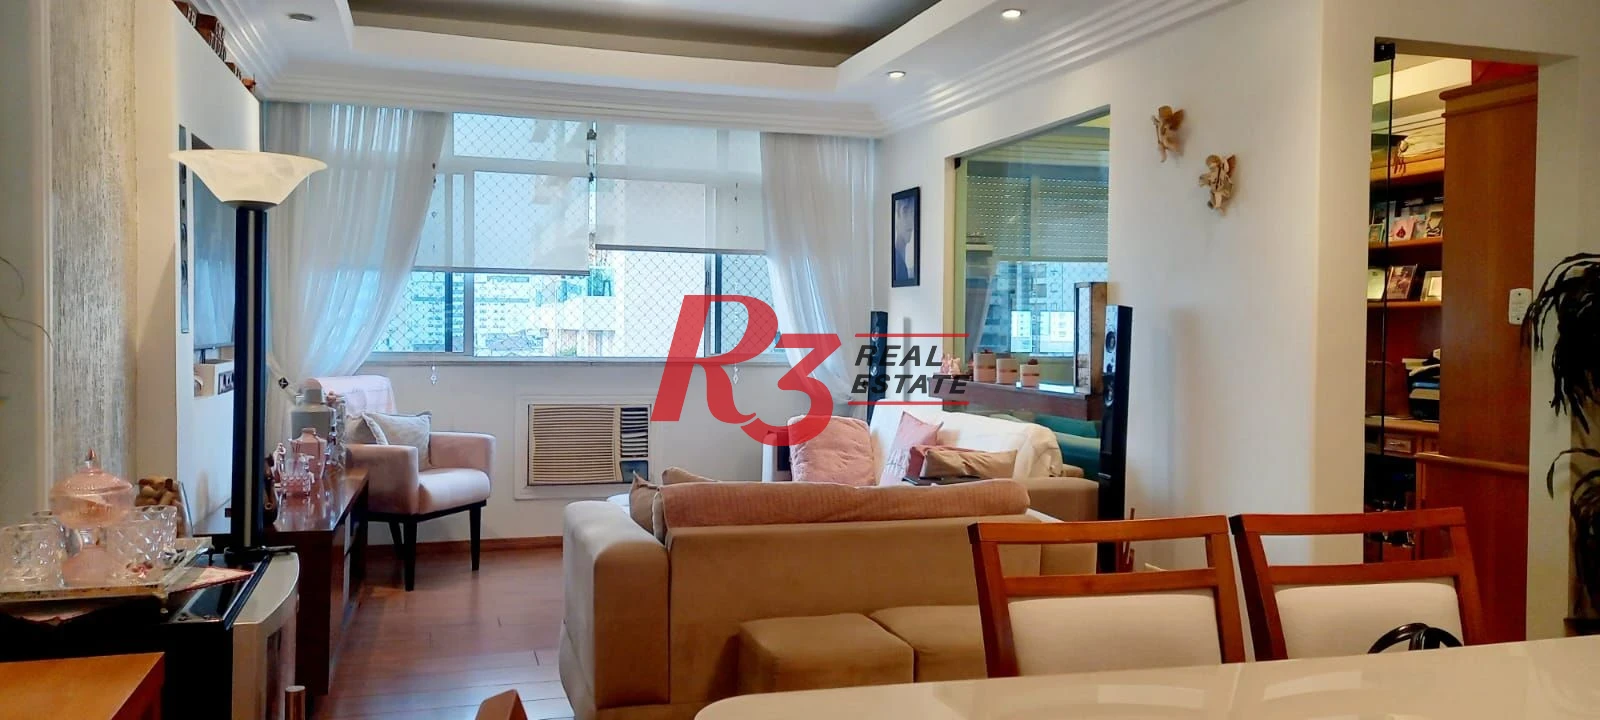 Apartamento com 2 dormitórios à venda, 106 m² por R$ 825.000,00 - Pompéia - Santos/SP